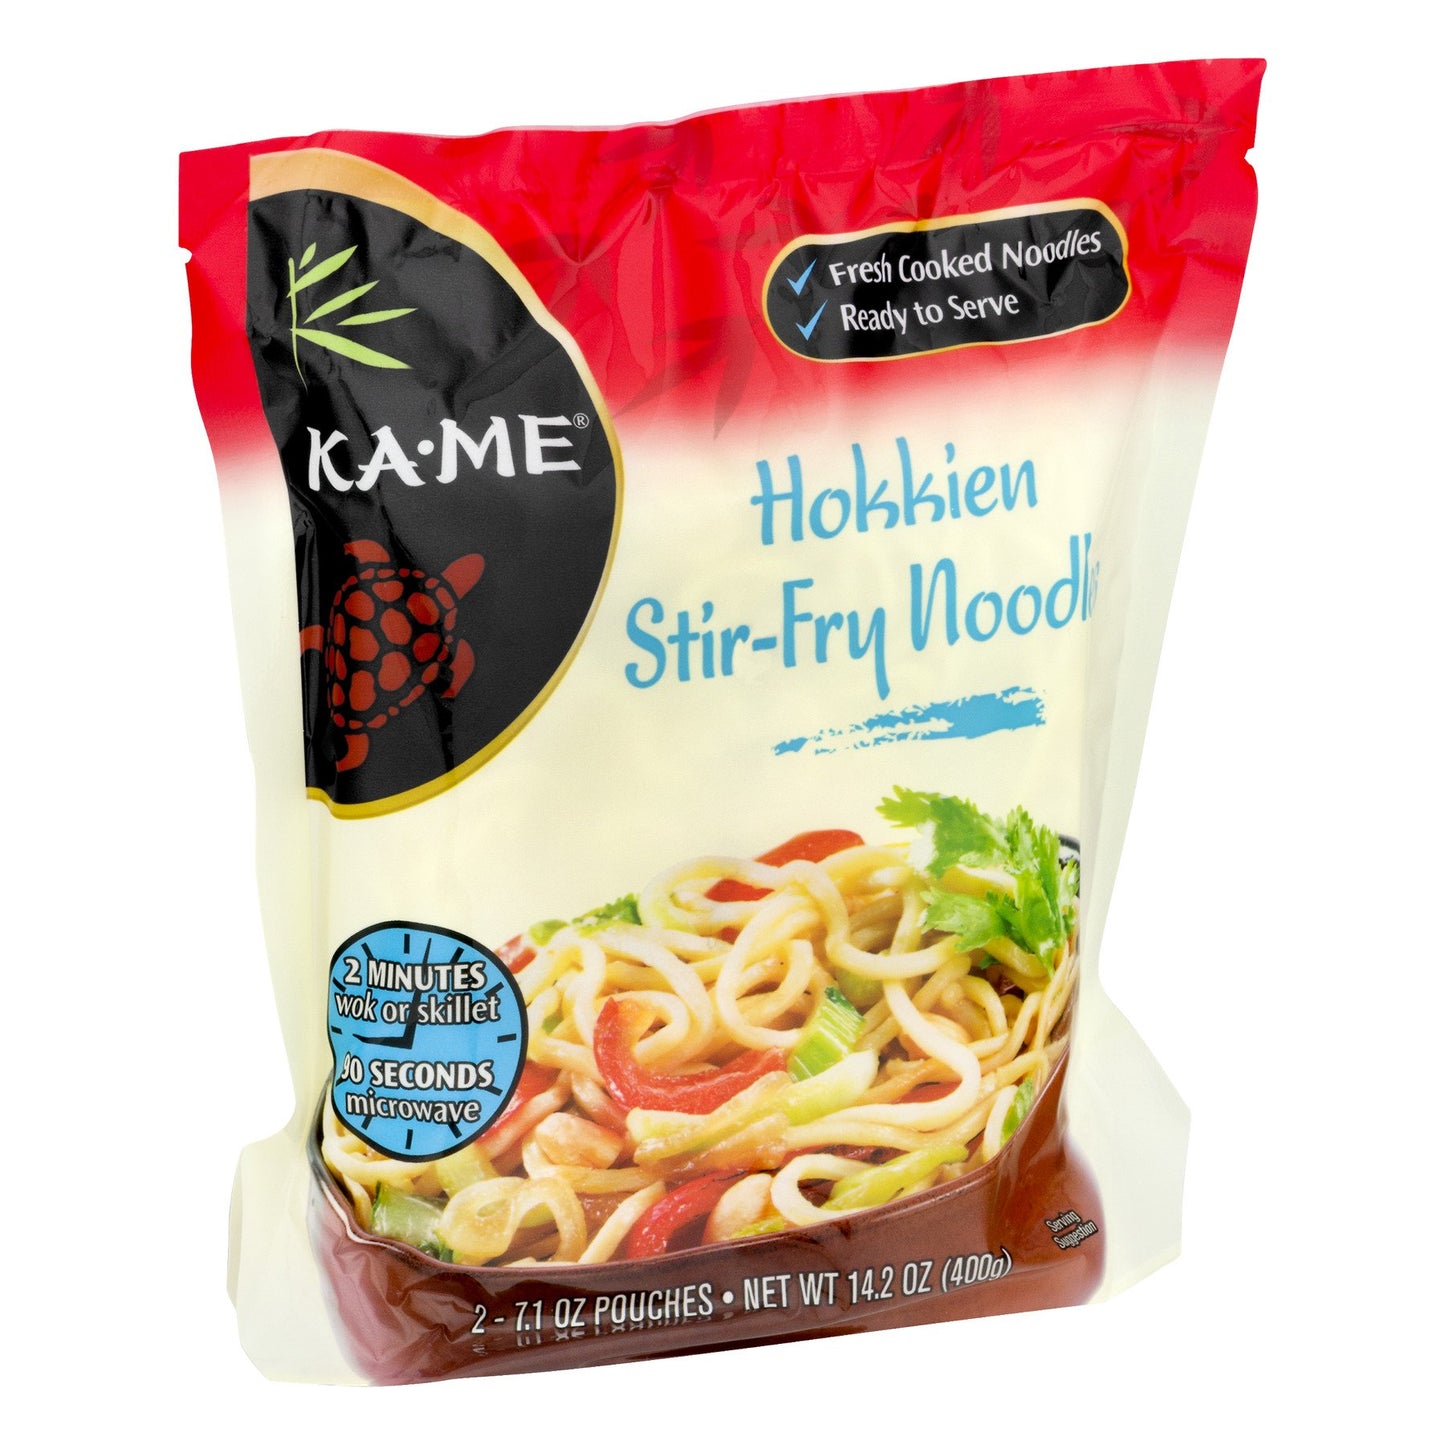 Ka-Me Hokkien Stir-Fry Noodles 14.2oz